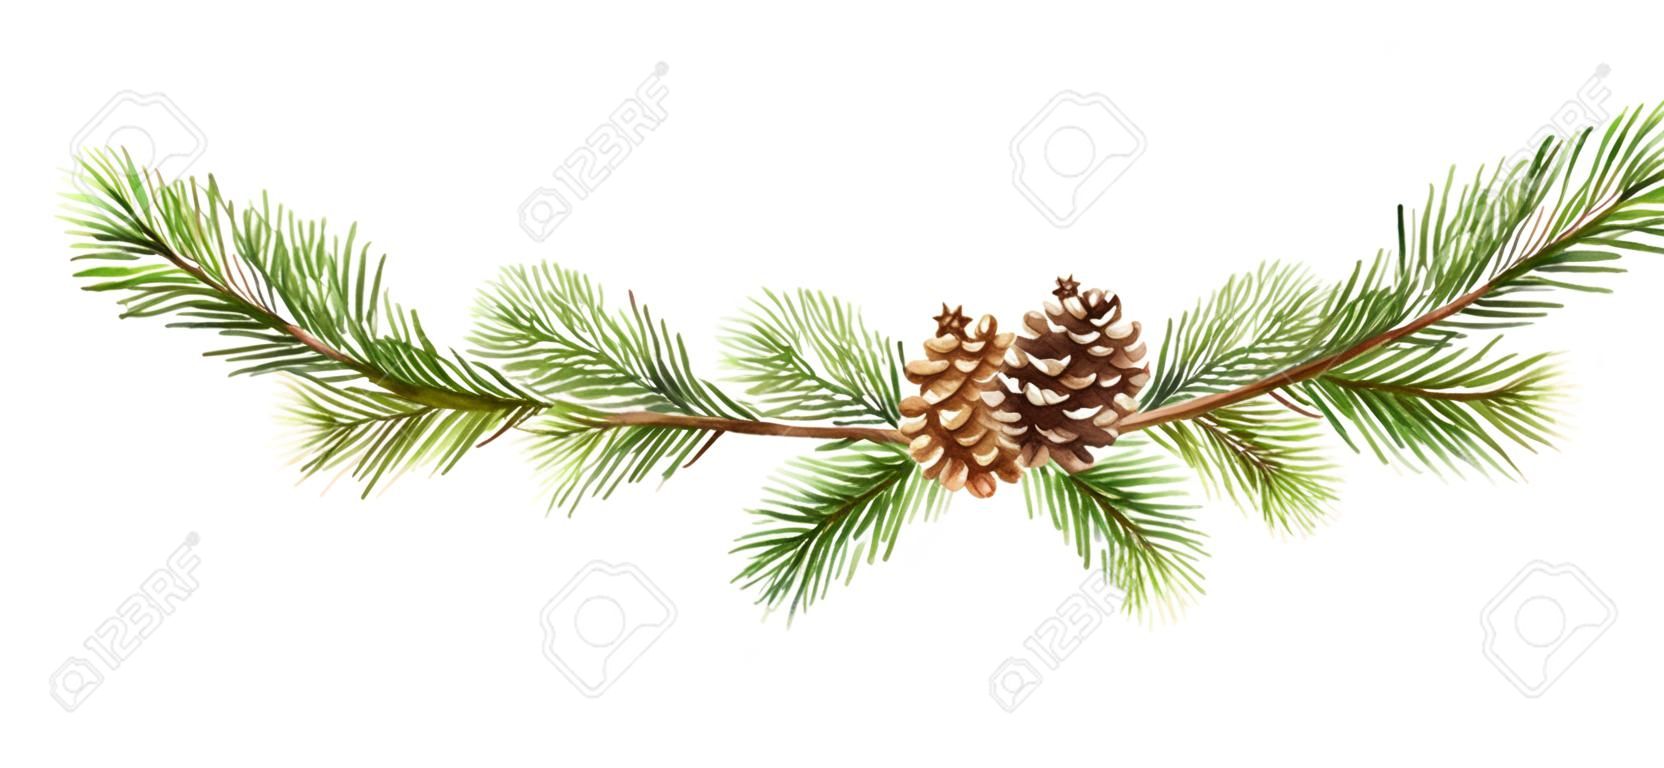 Bandeira do Natal do vetor da aquarela com ramos do abeto e lugar para o texto. Ilustração para cartões e convites isolados no fundo branco.